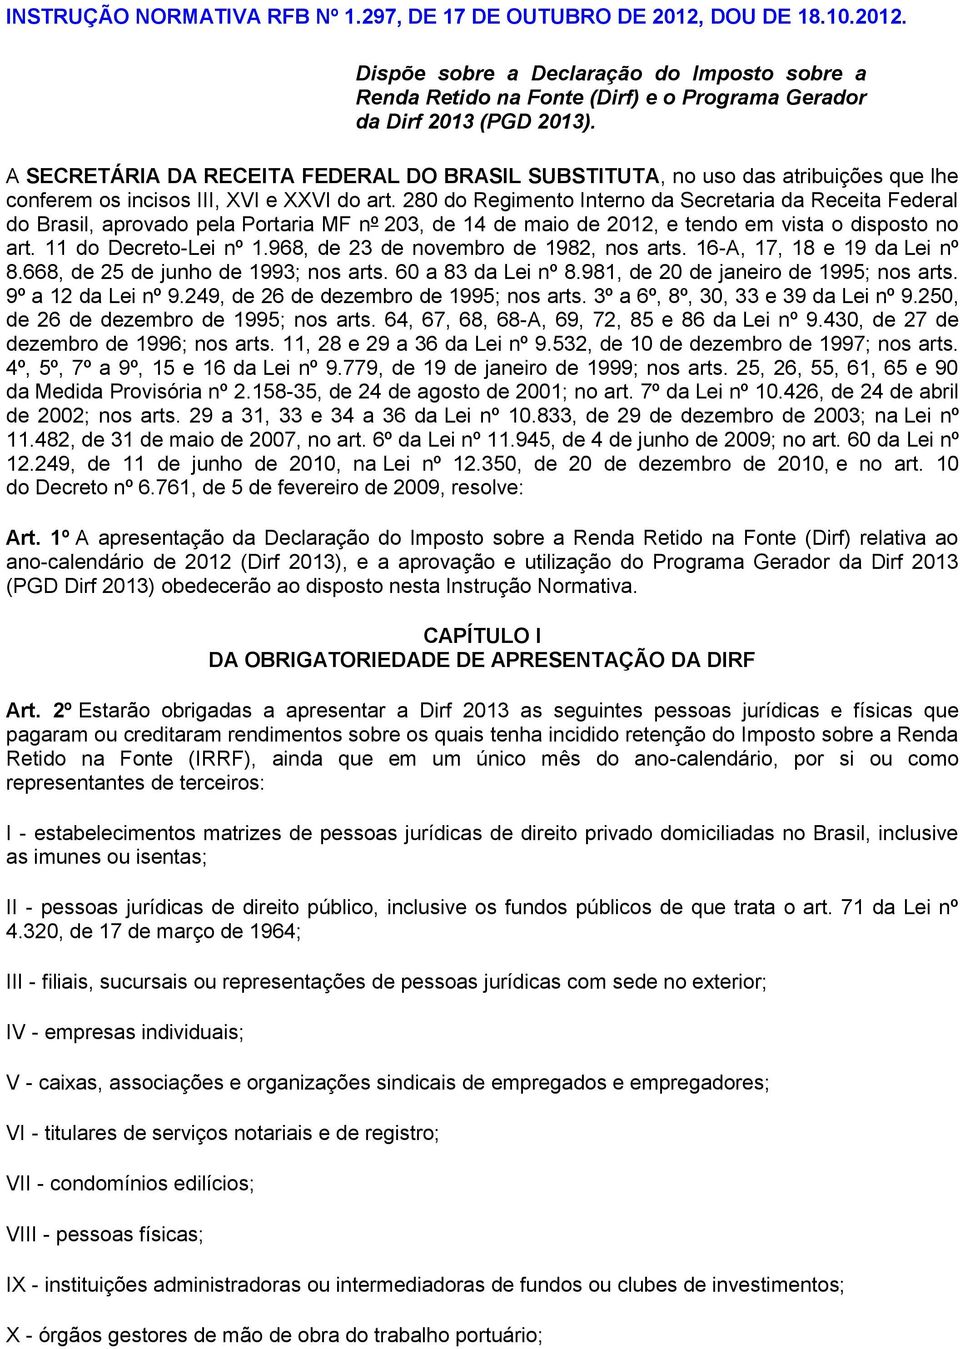 280 do Regimento Interno da Secretaria da Receita Federal do Brasil, aprovado pela Portaria MF nº 203, de 14 de maio de 2012, e tendo em vista o disposto no art. 11 do Decreto-Lei nº 1.